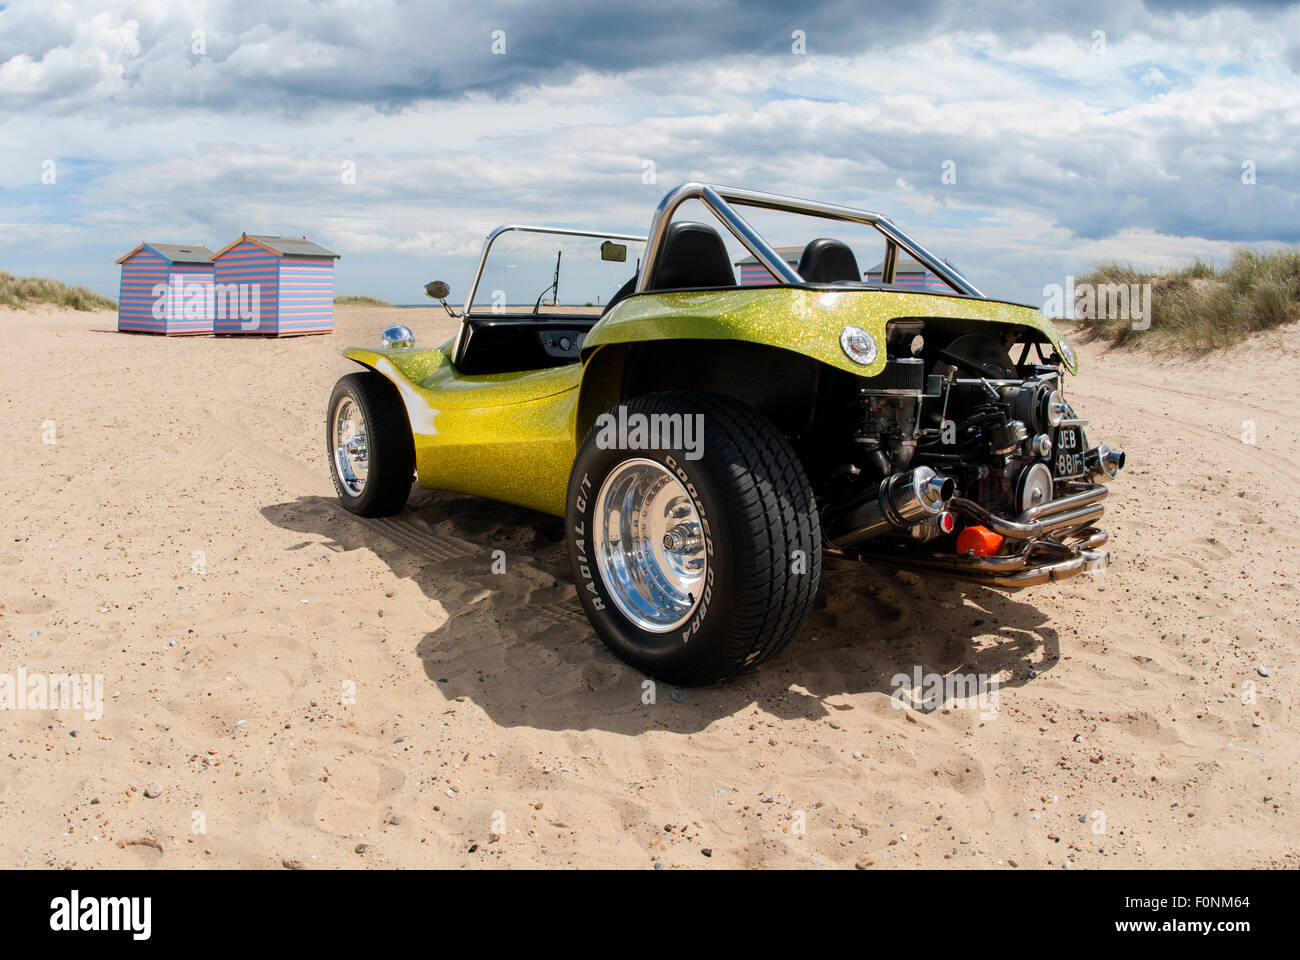 Beach buggy on a sandy beach. VW Beetle based dune buggy car Stock Photo